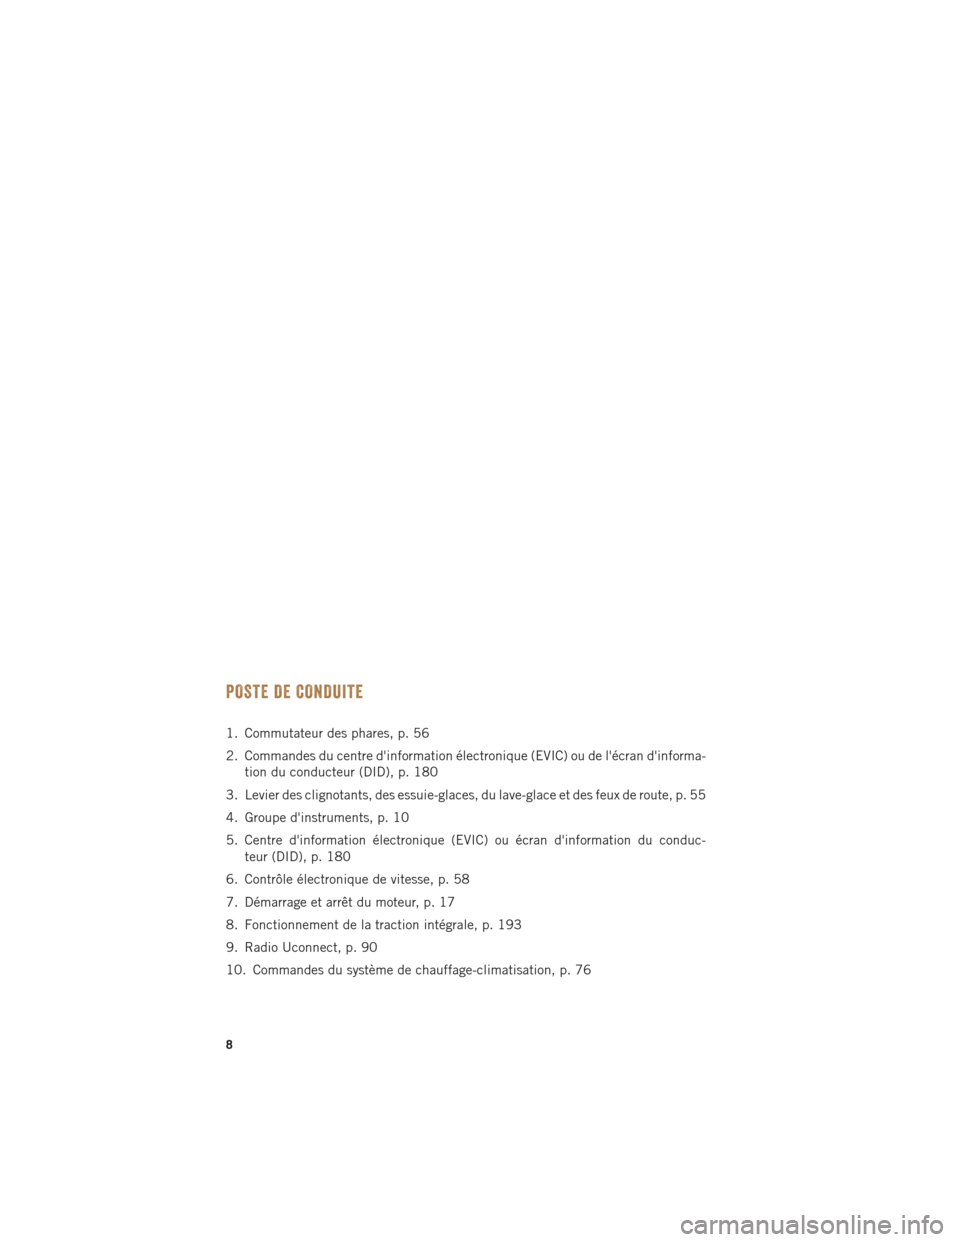 Ram 1500 2016  Guide dutilisateur (in French) POSTE DE CONDUITE
1. Commutateur des phares, p. 56
2. Commandes du centre dinformation électronique (EVIC) ou de lécran dinforma-tion du conducteur (DID), p. 180
3. Levier des clignotants, des es